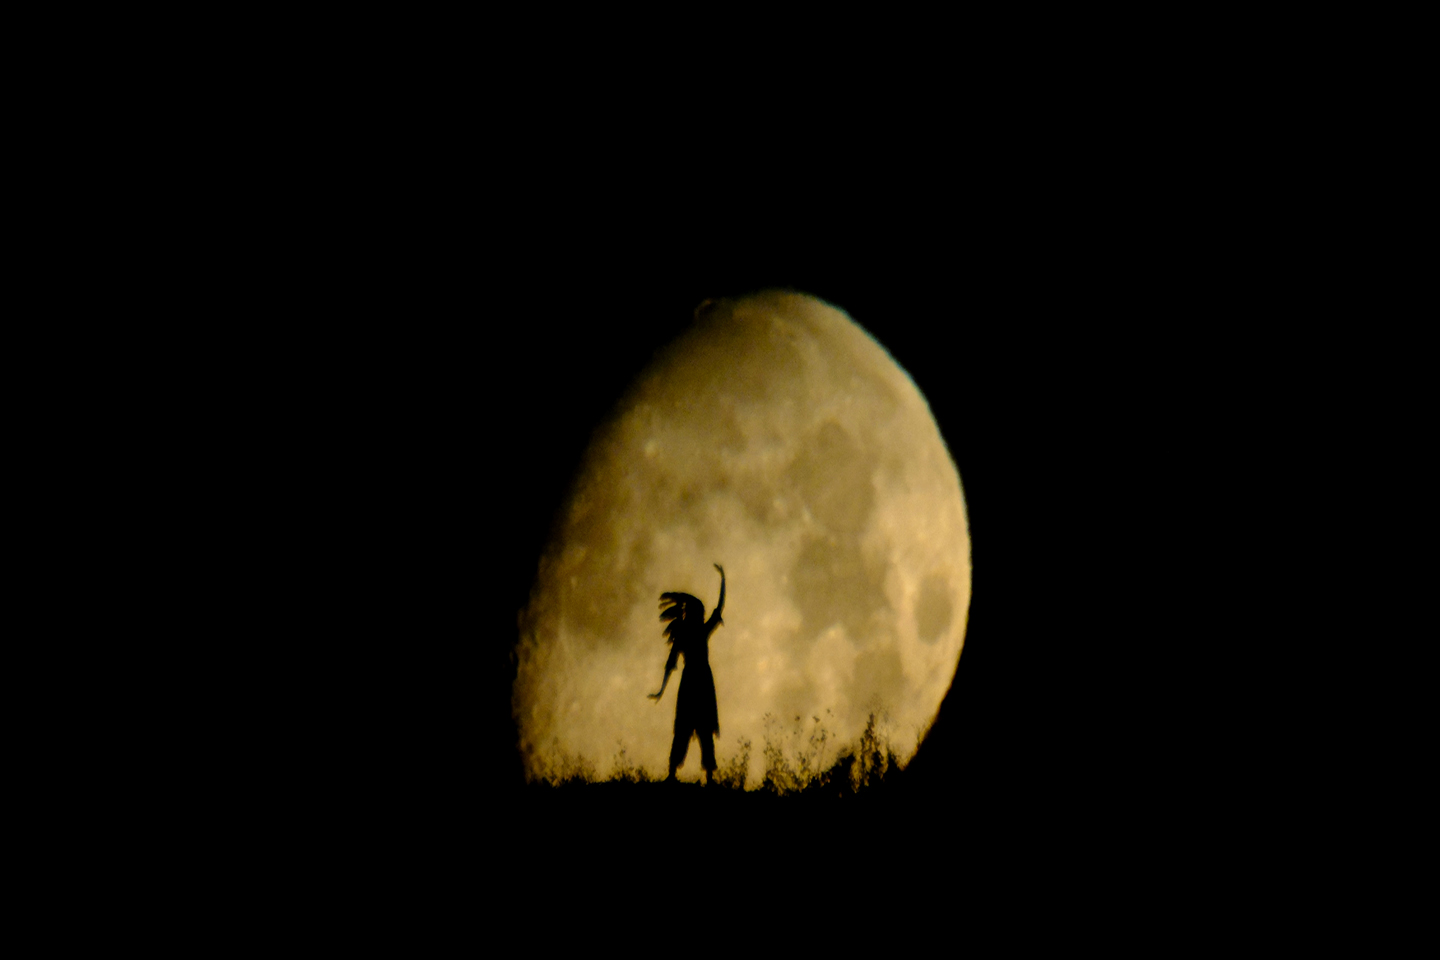 Nachtaufnahme des Mondes mit der dunklen Silhouette einer Person mit indianischem Federkopfschmuck im Vordergrund